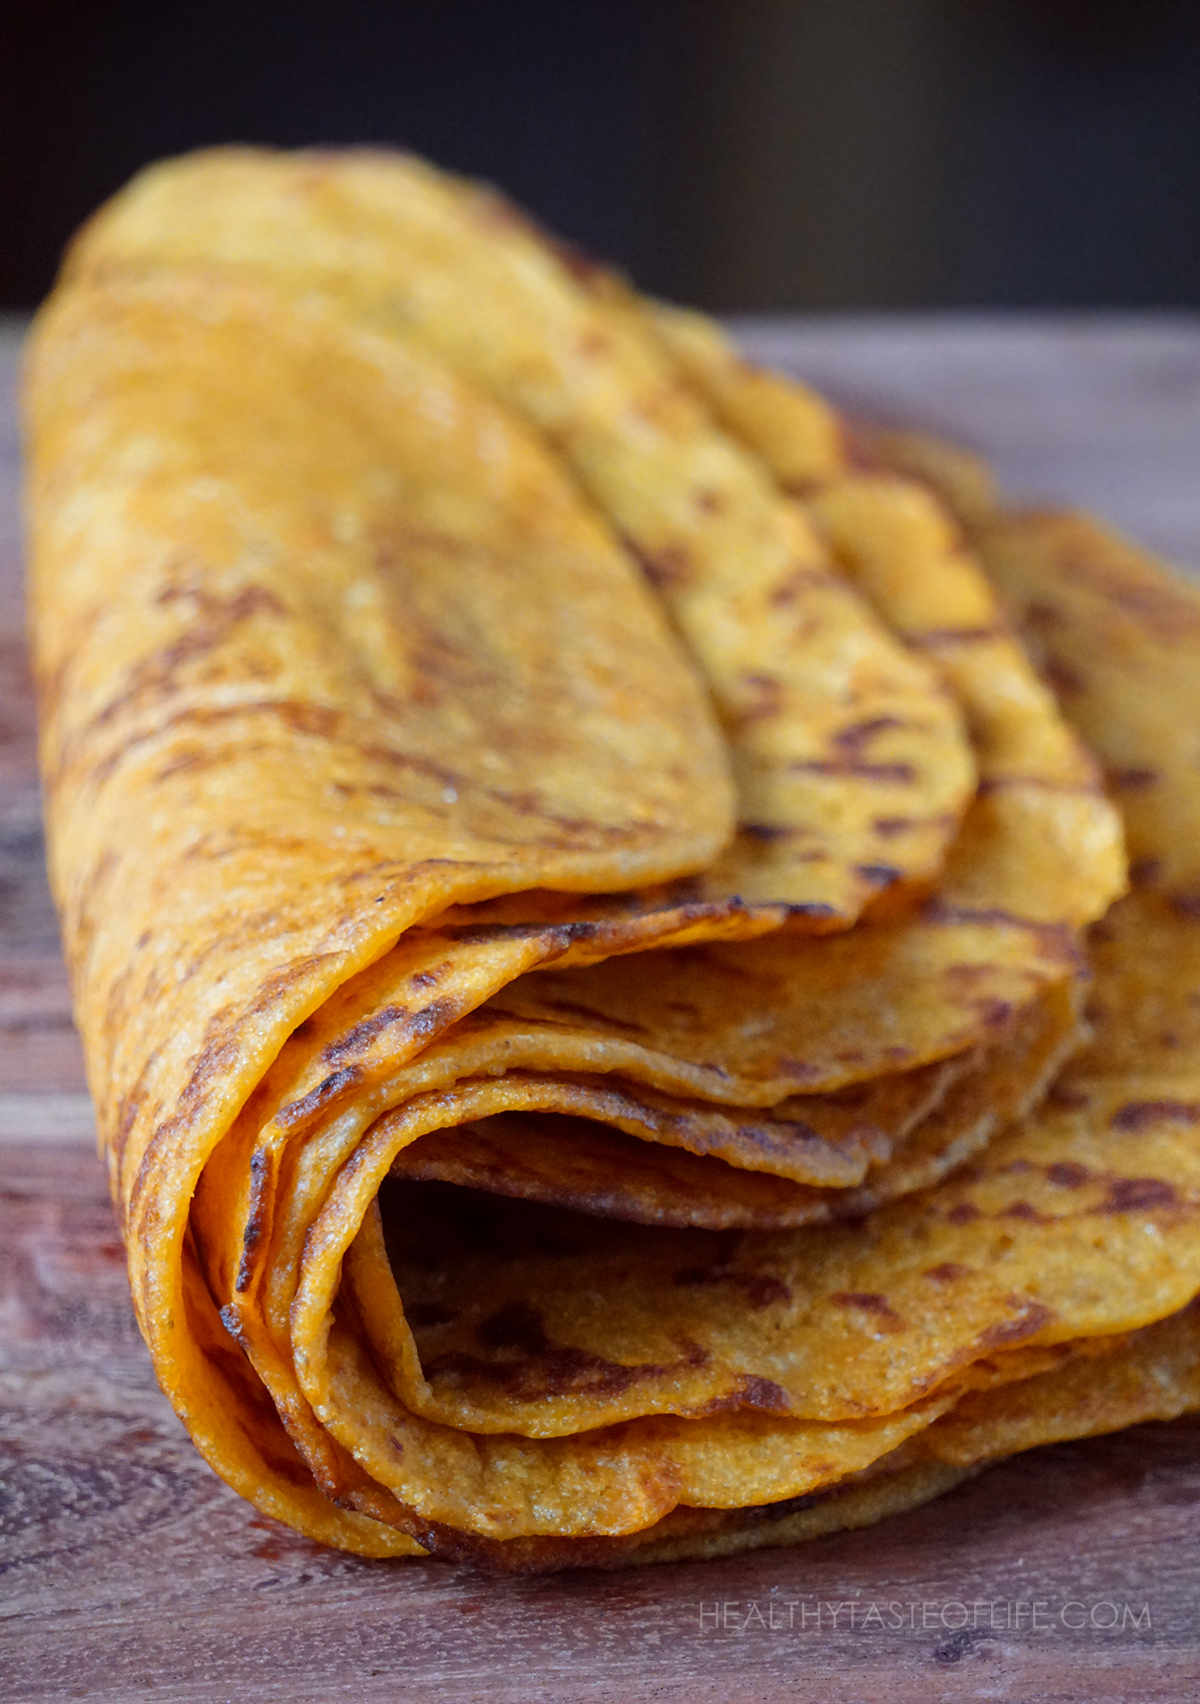 Thin pliable vegan gluten free sweet potato tortillas / wraps.